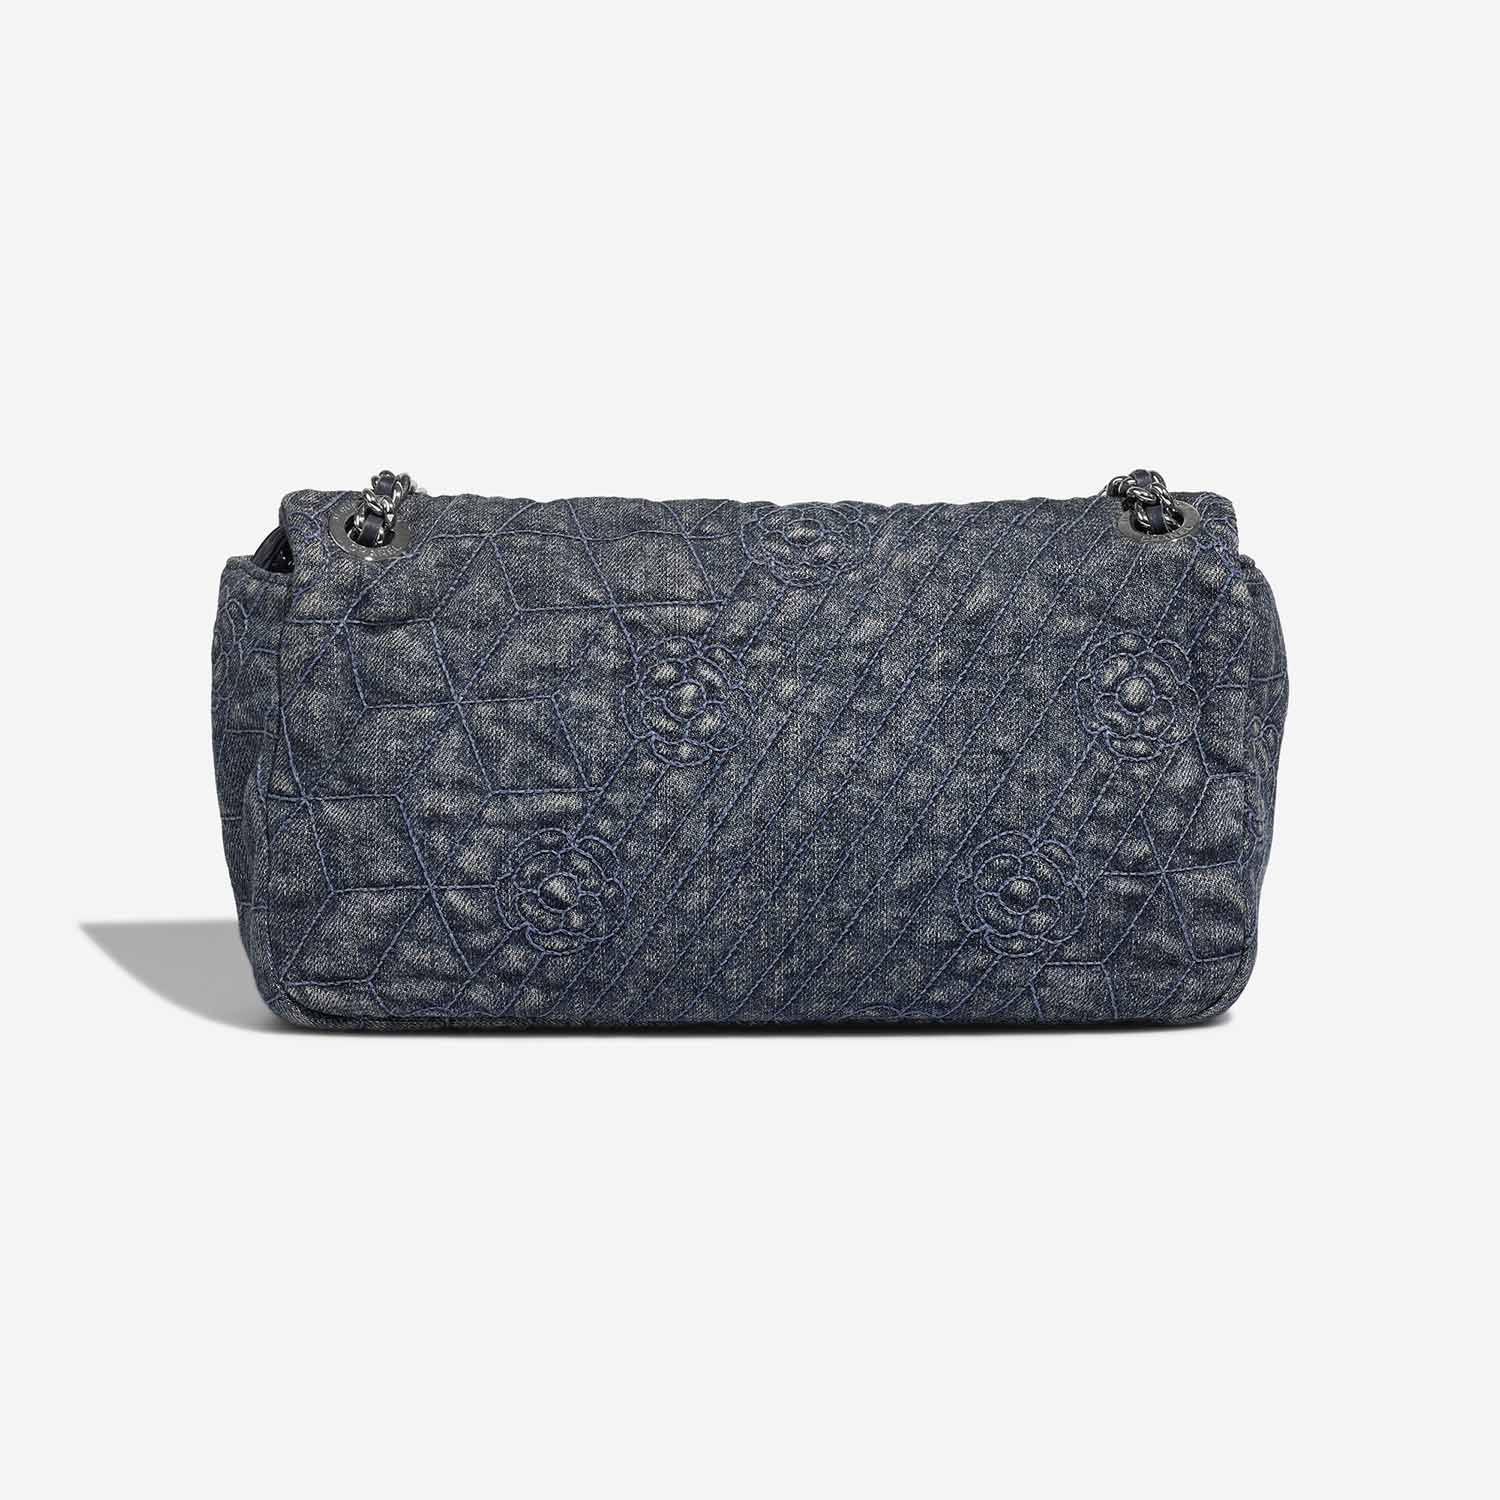 Chanel Timeless Medium Blue Back | Verkaufen Sie Ihre Designer-Tasche auf Saclab.com